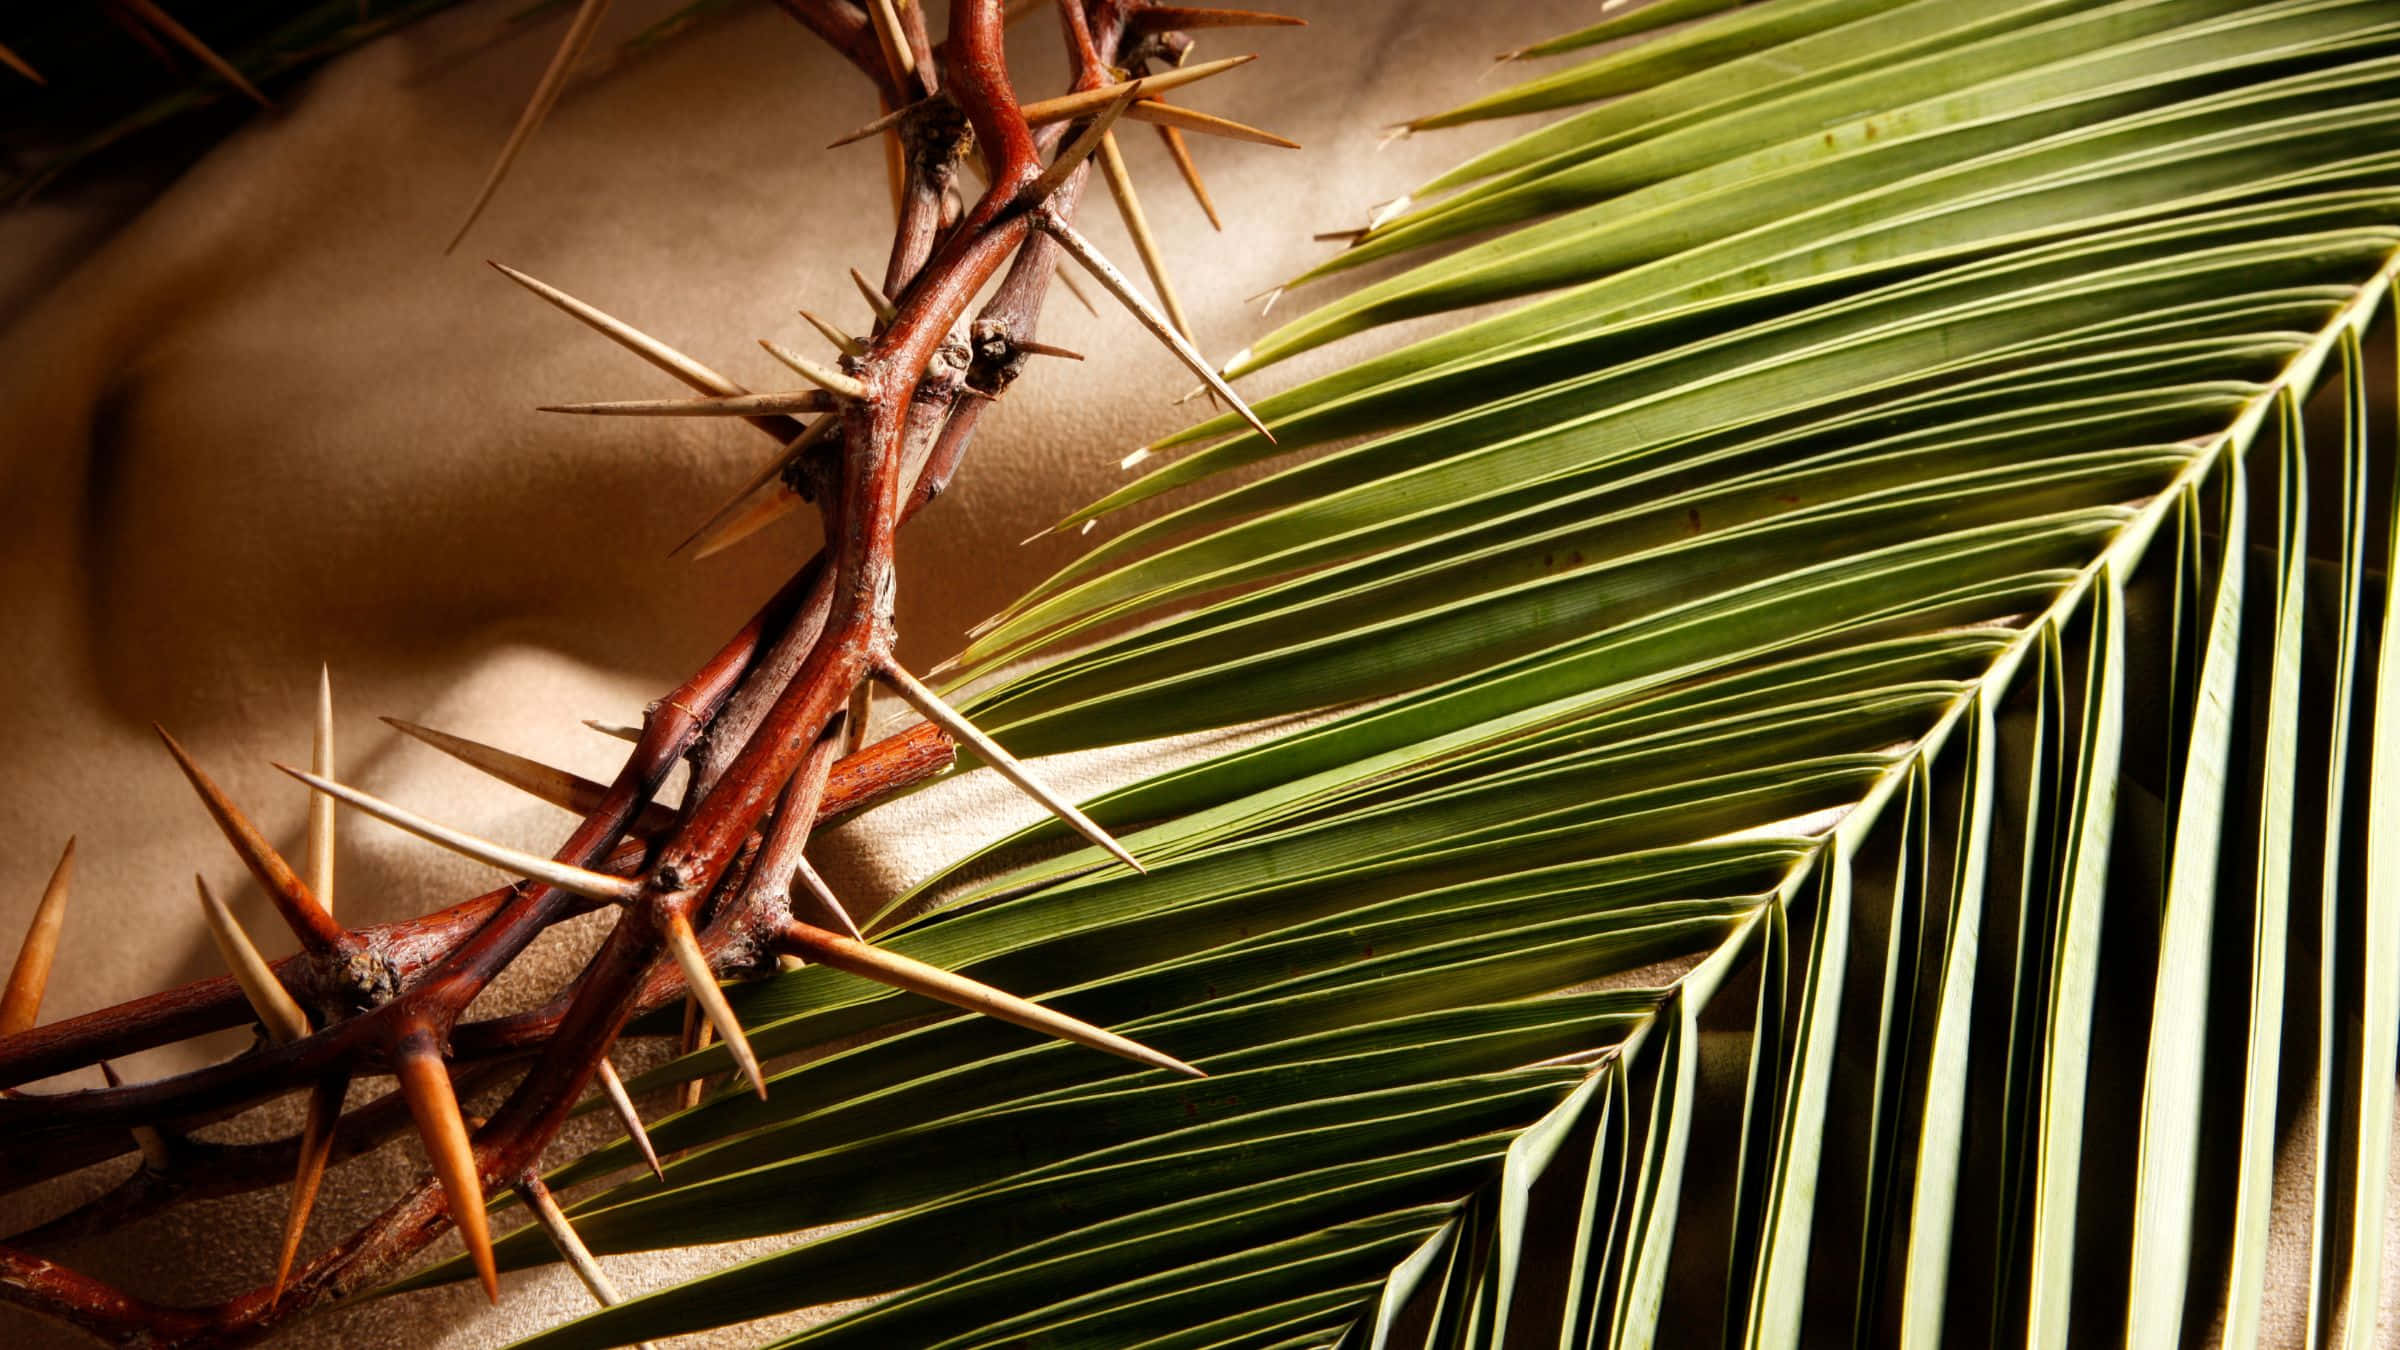 Einedornenkrone Wird Auf Ein Palmblatt Gelegt.